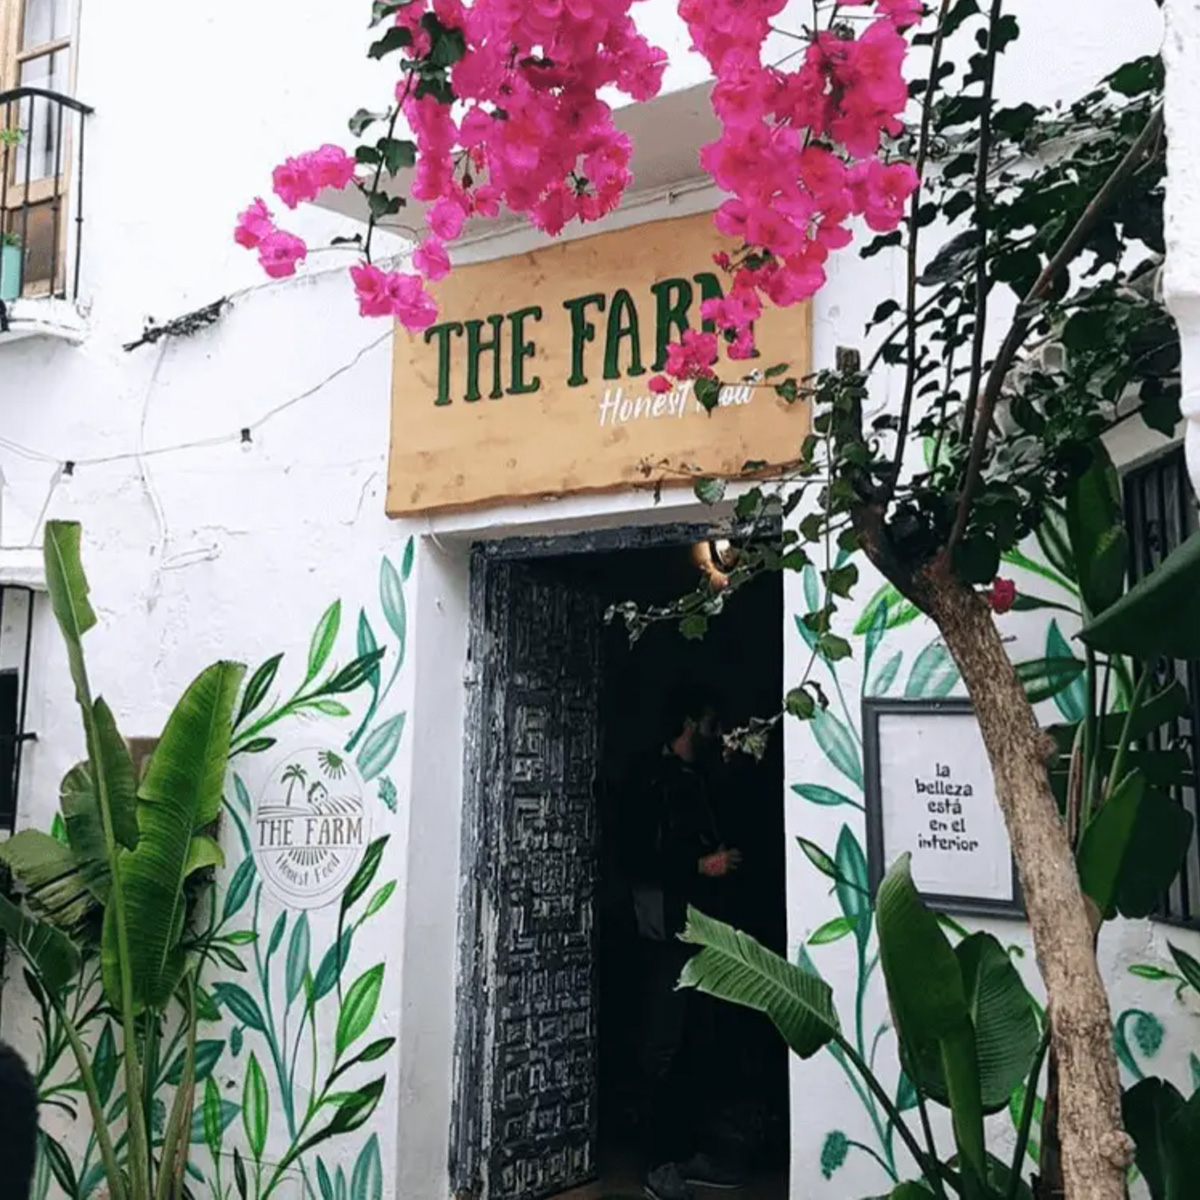 The Old Town’s “Urban Beach Bar”